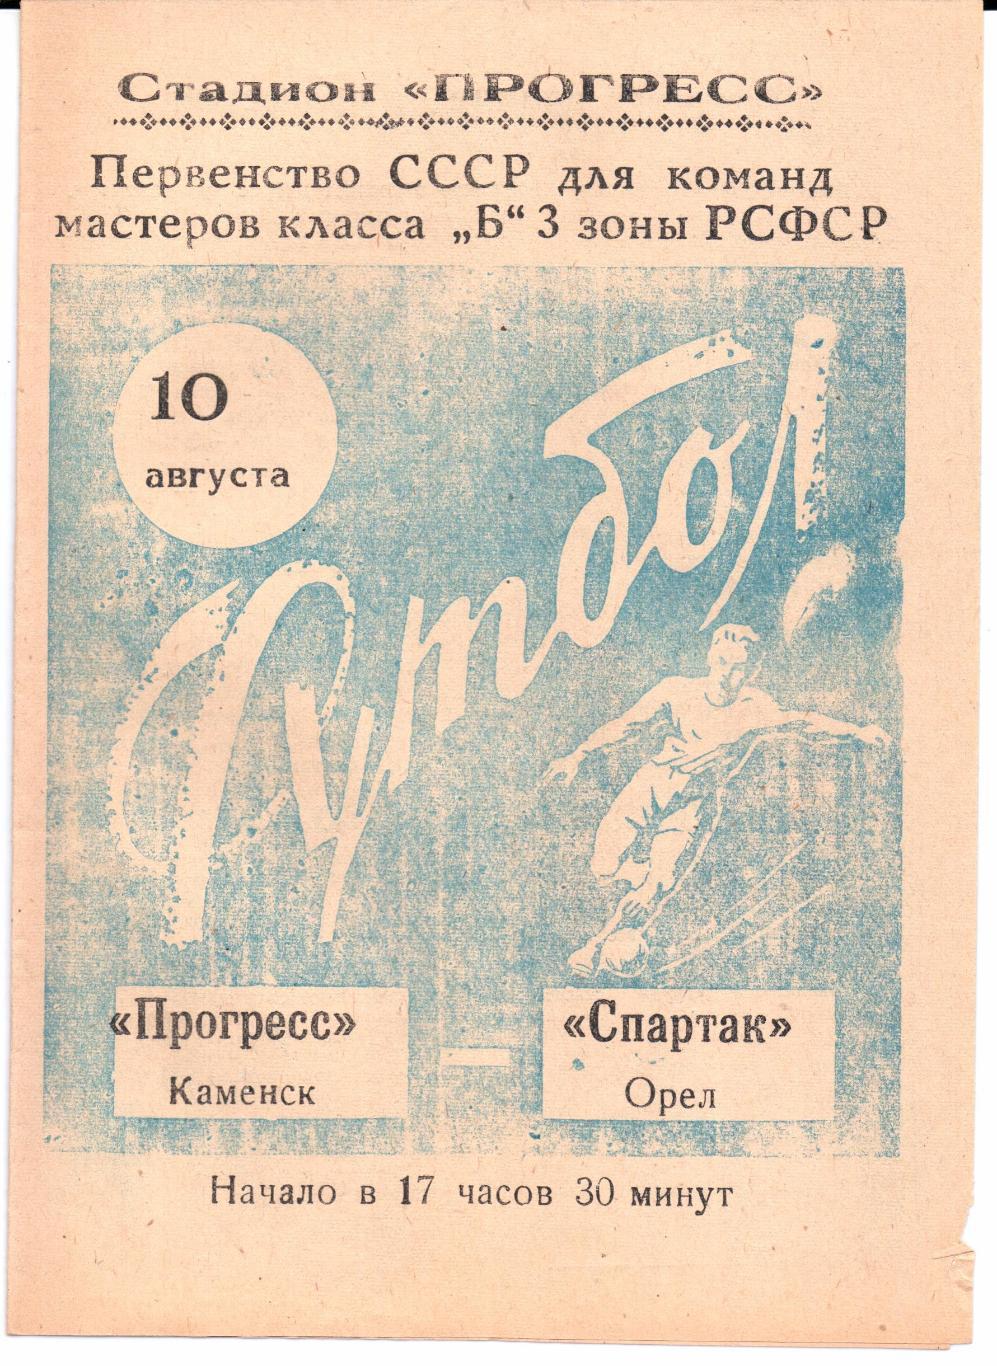 Класс Б 3-я зона Прогресс(Каменск)-Спартак(Ор ел)10.08.1965